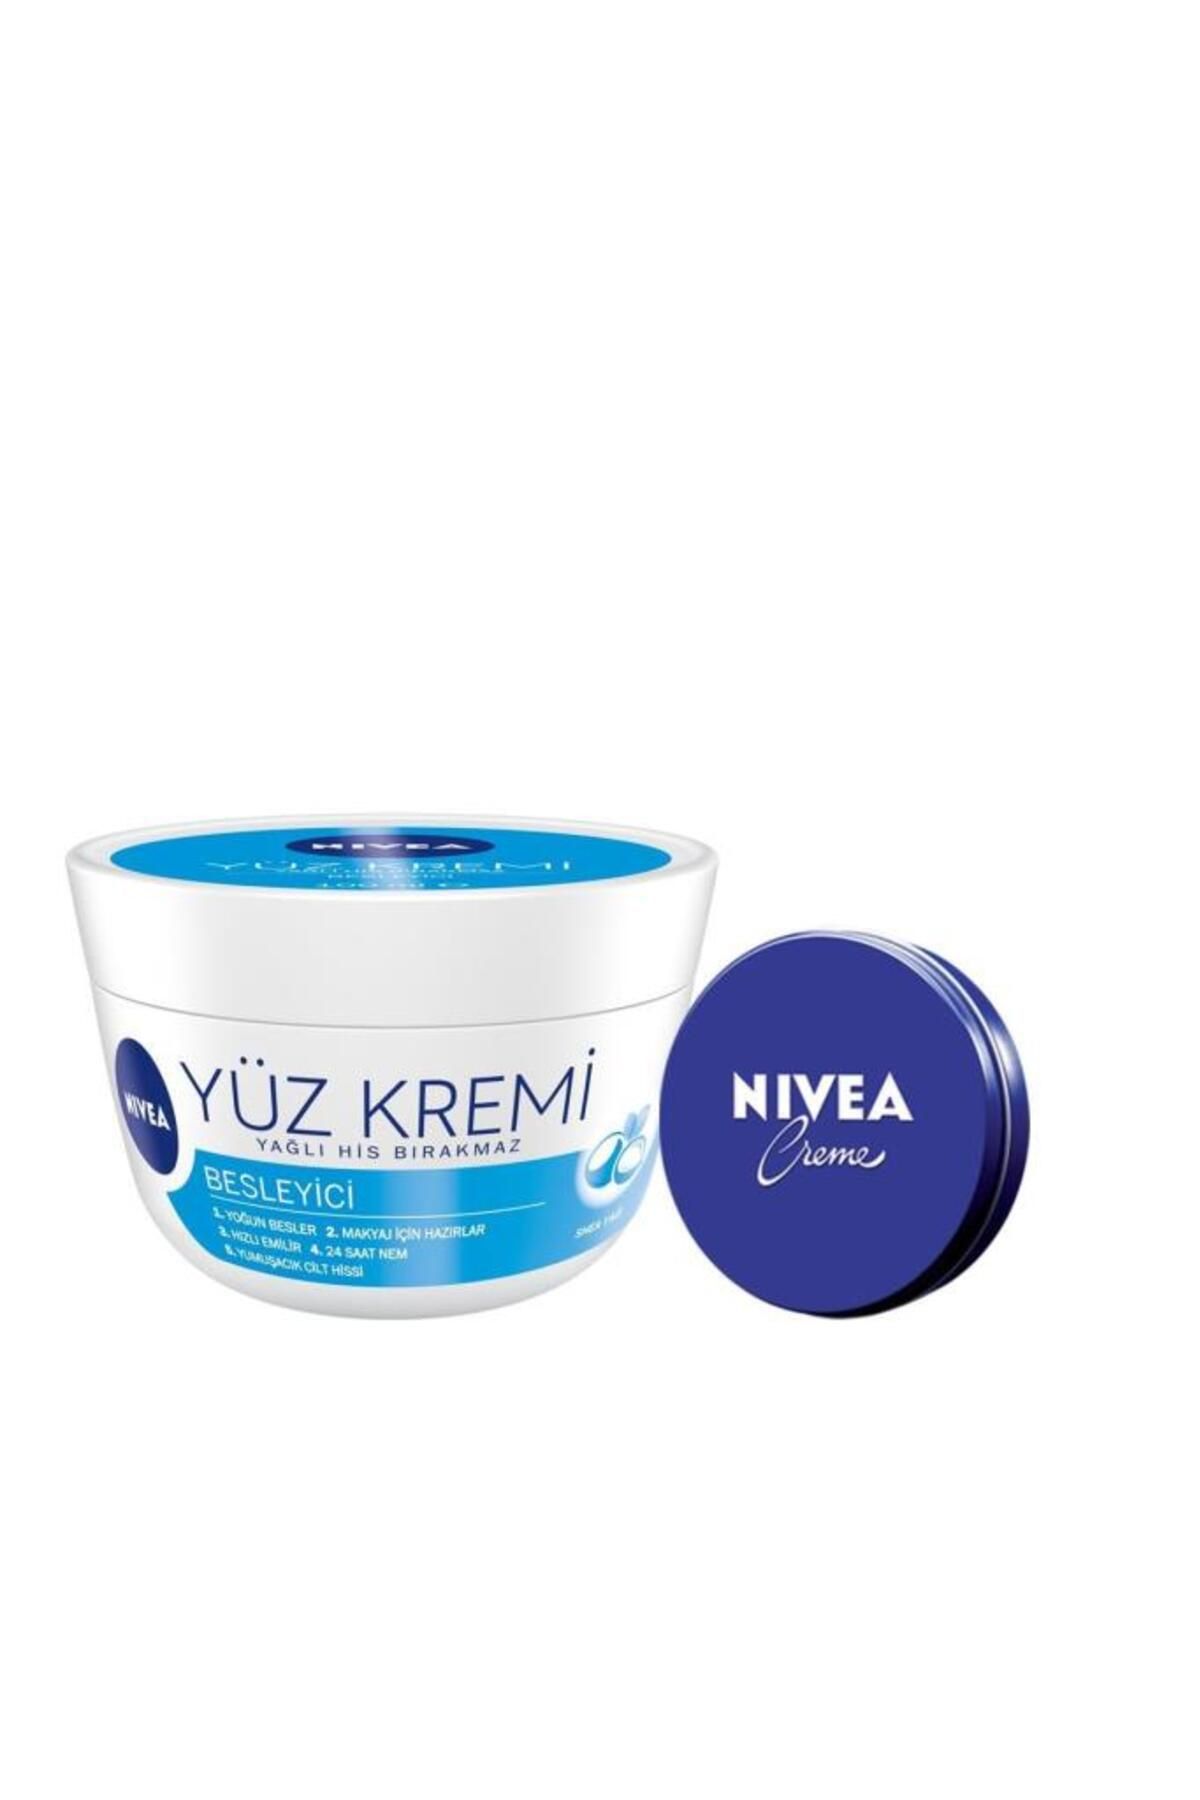 NIVEA Besleyici Yüz Kremi 100 ml + Nıvea Crème 30 ml